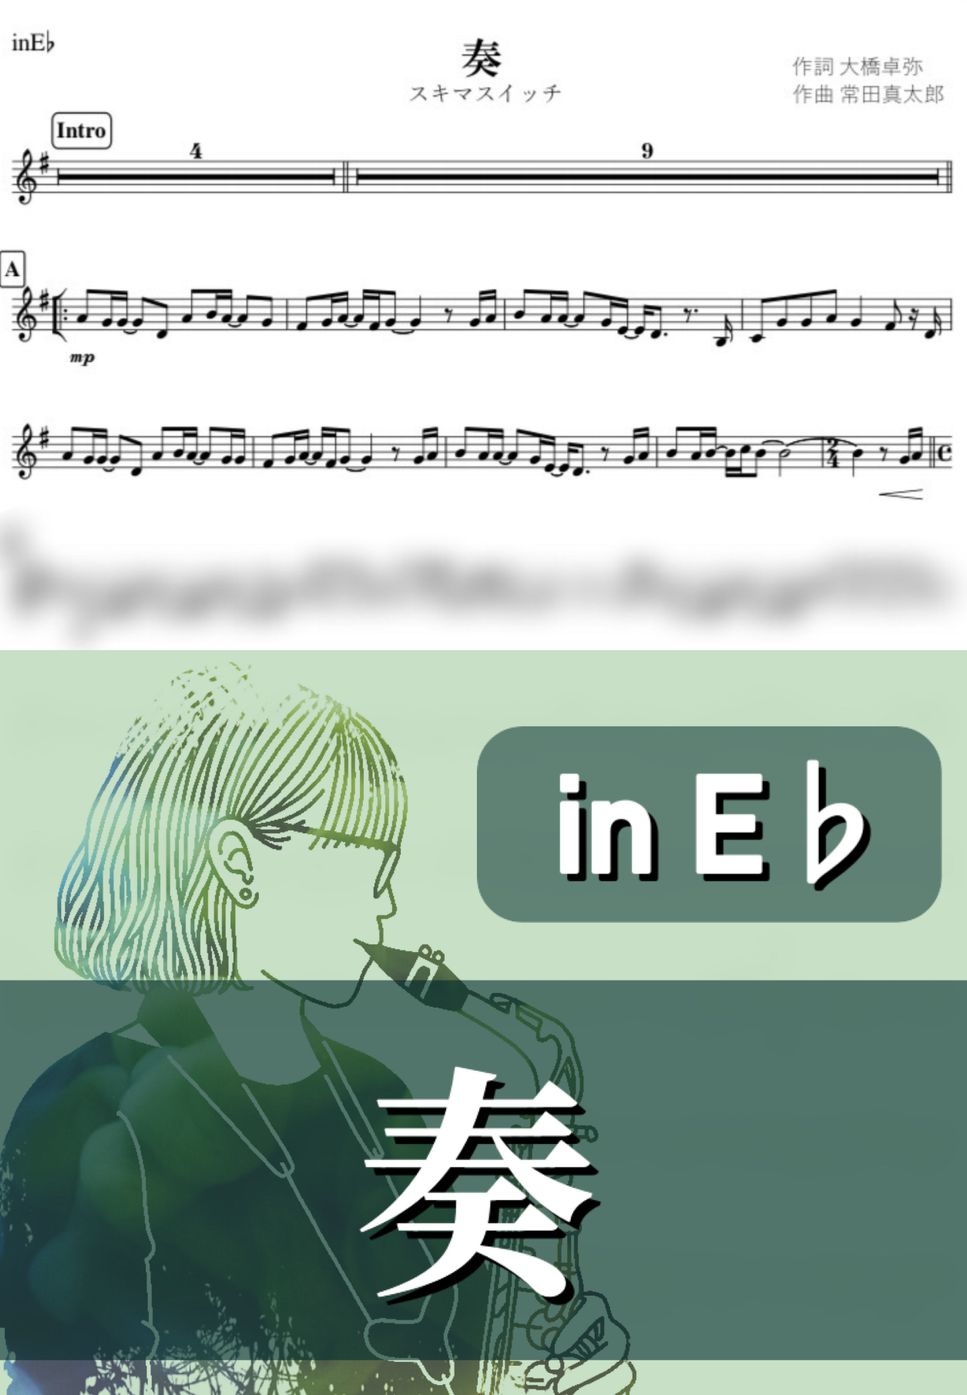 スキマスイッチ - 奏 (E♭) by kanamusic